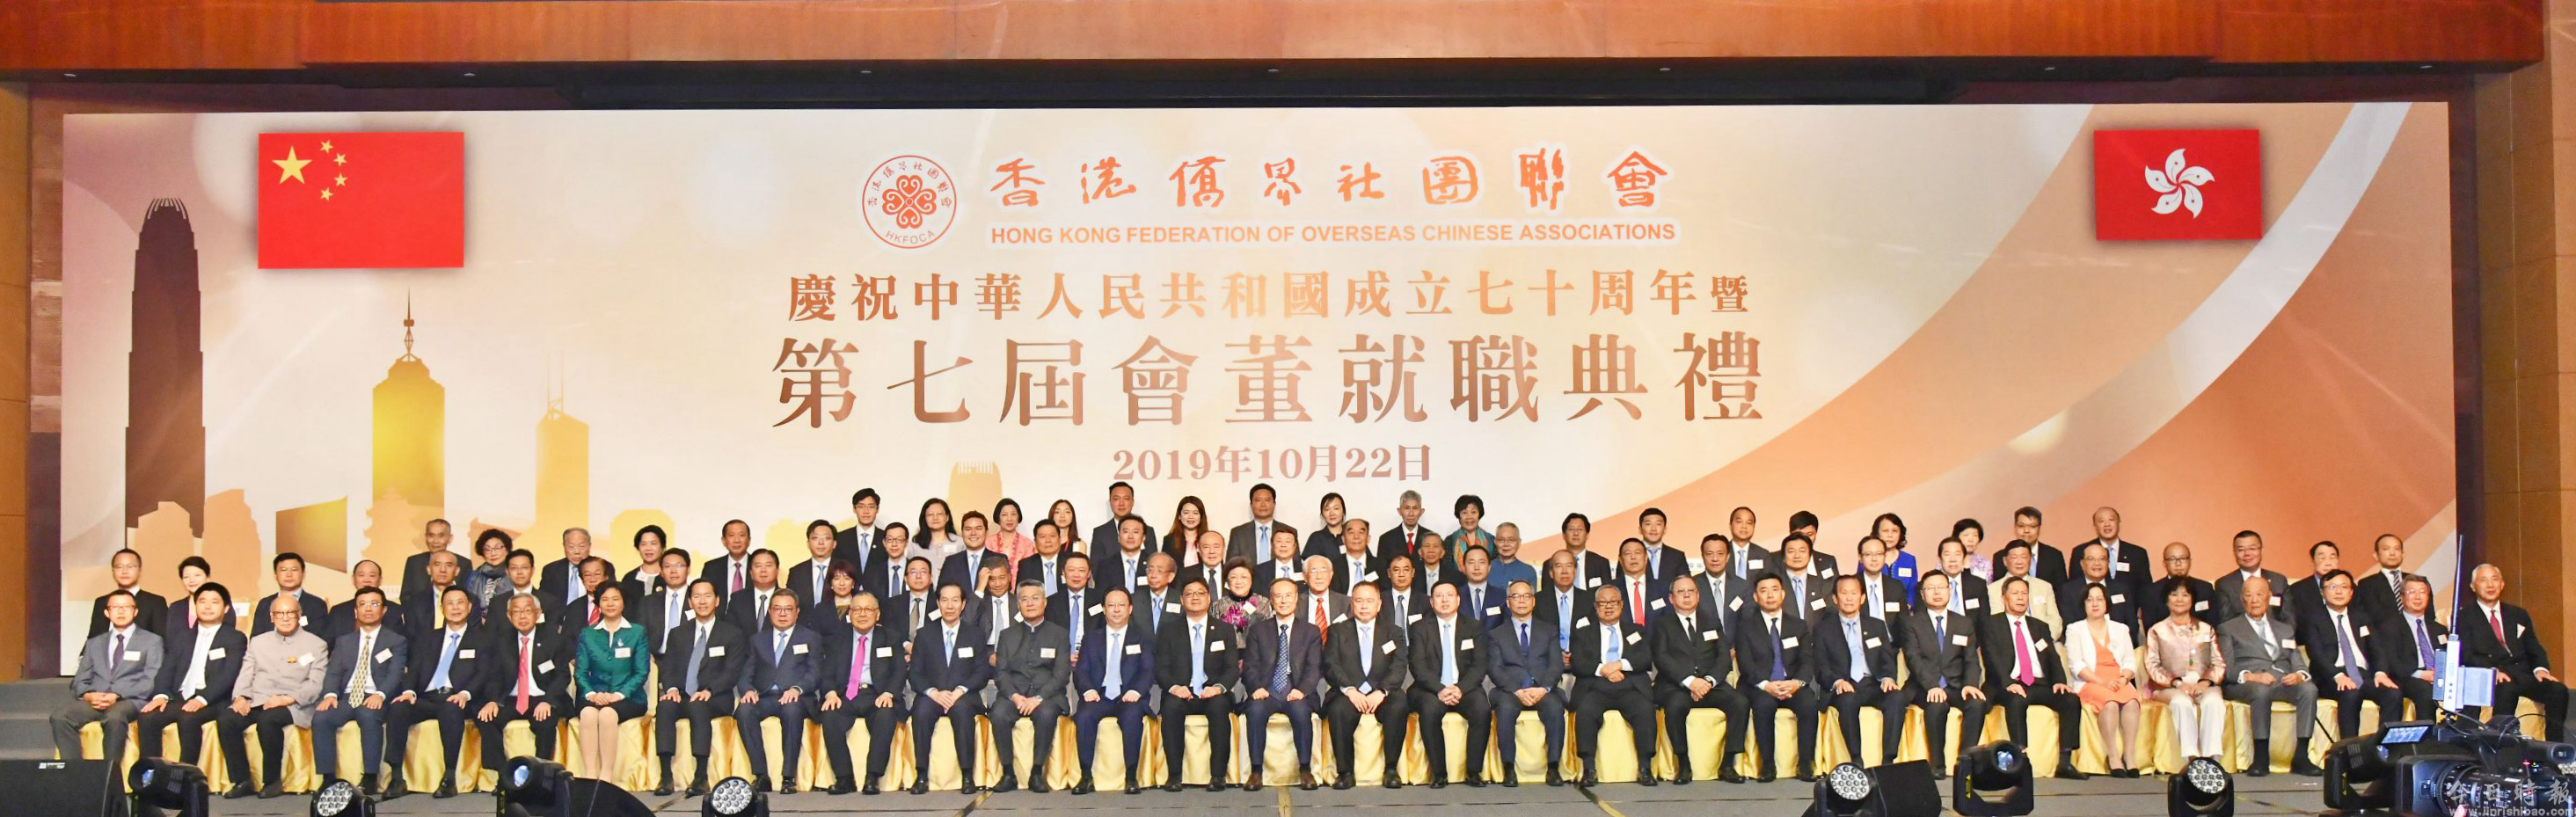 谭铁牛出席香港侨界社团联会庆祝国庆70周年暨就职典礼晚会